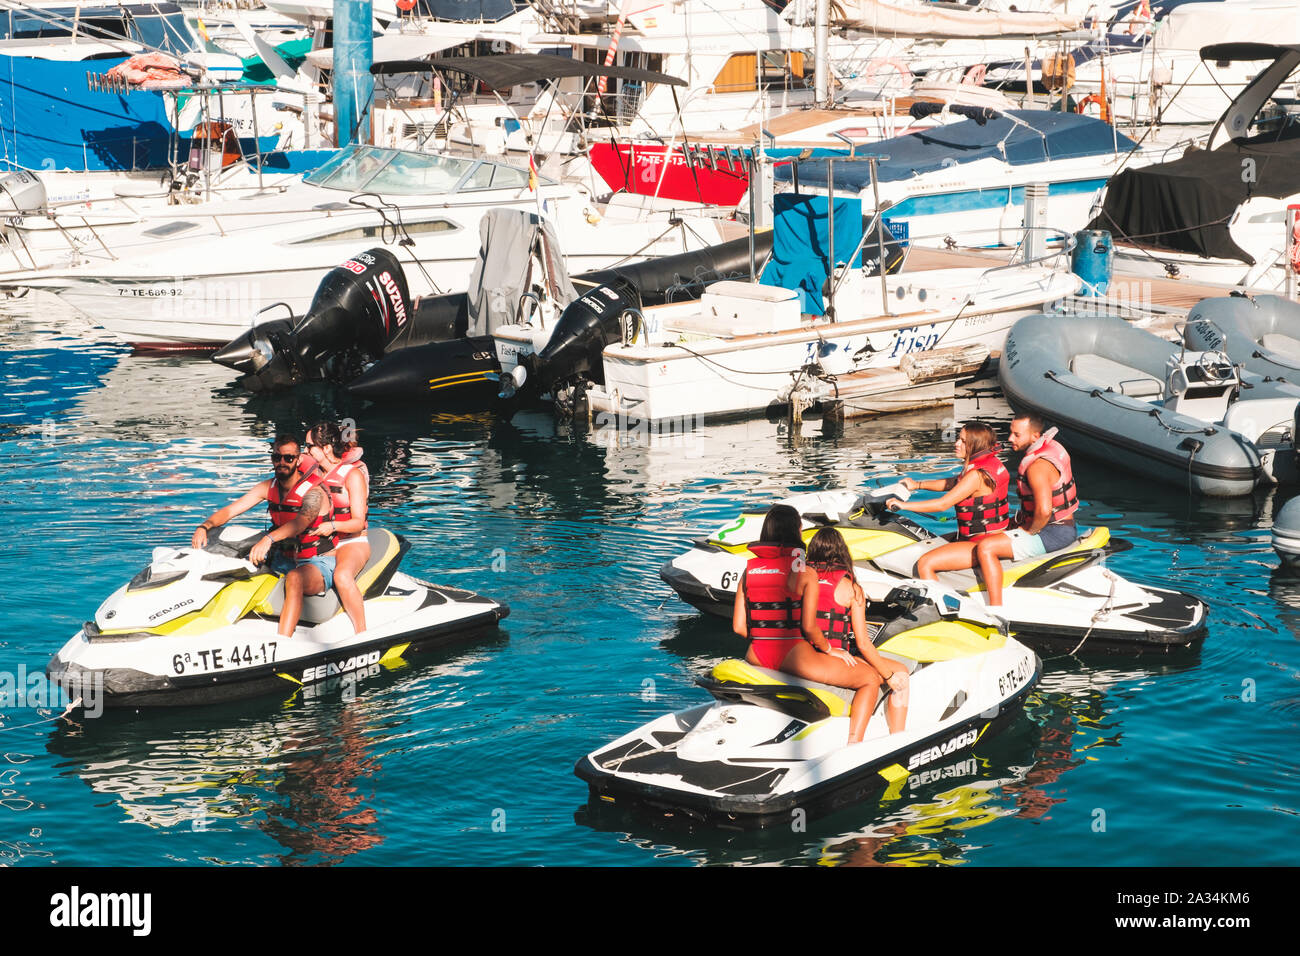 Teneriffa, Spanien - August 2019: eine Gruppe von Jugendlichen auf Jet Ski am Boot und Yacht Hafen im Spiel de Las Americas Teneriffa Stockfoto